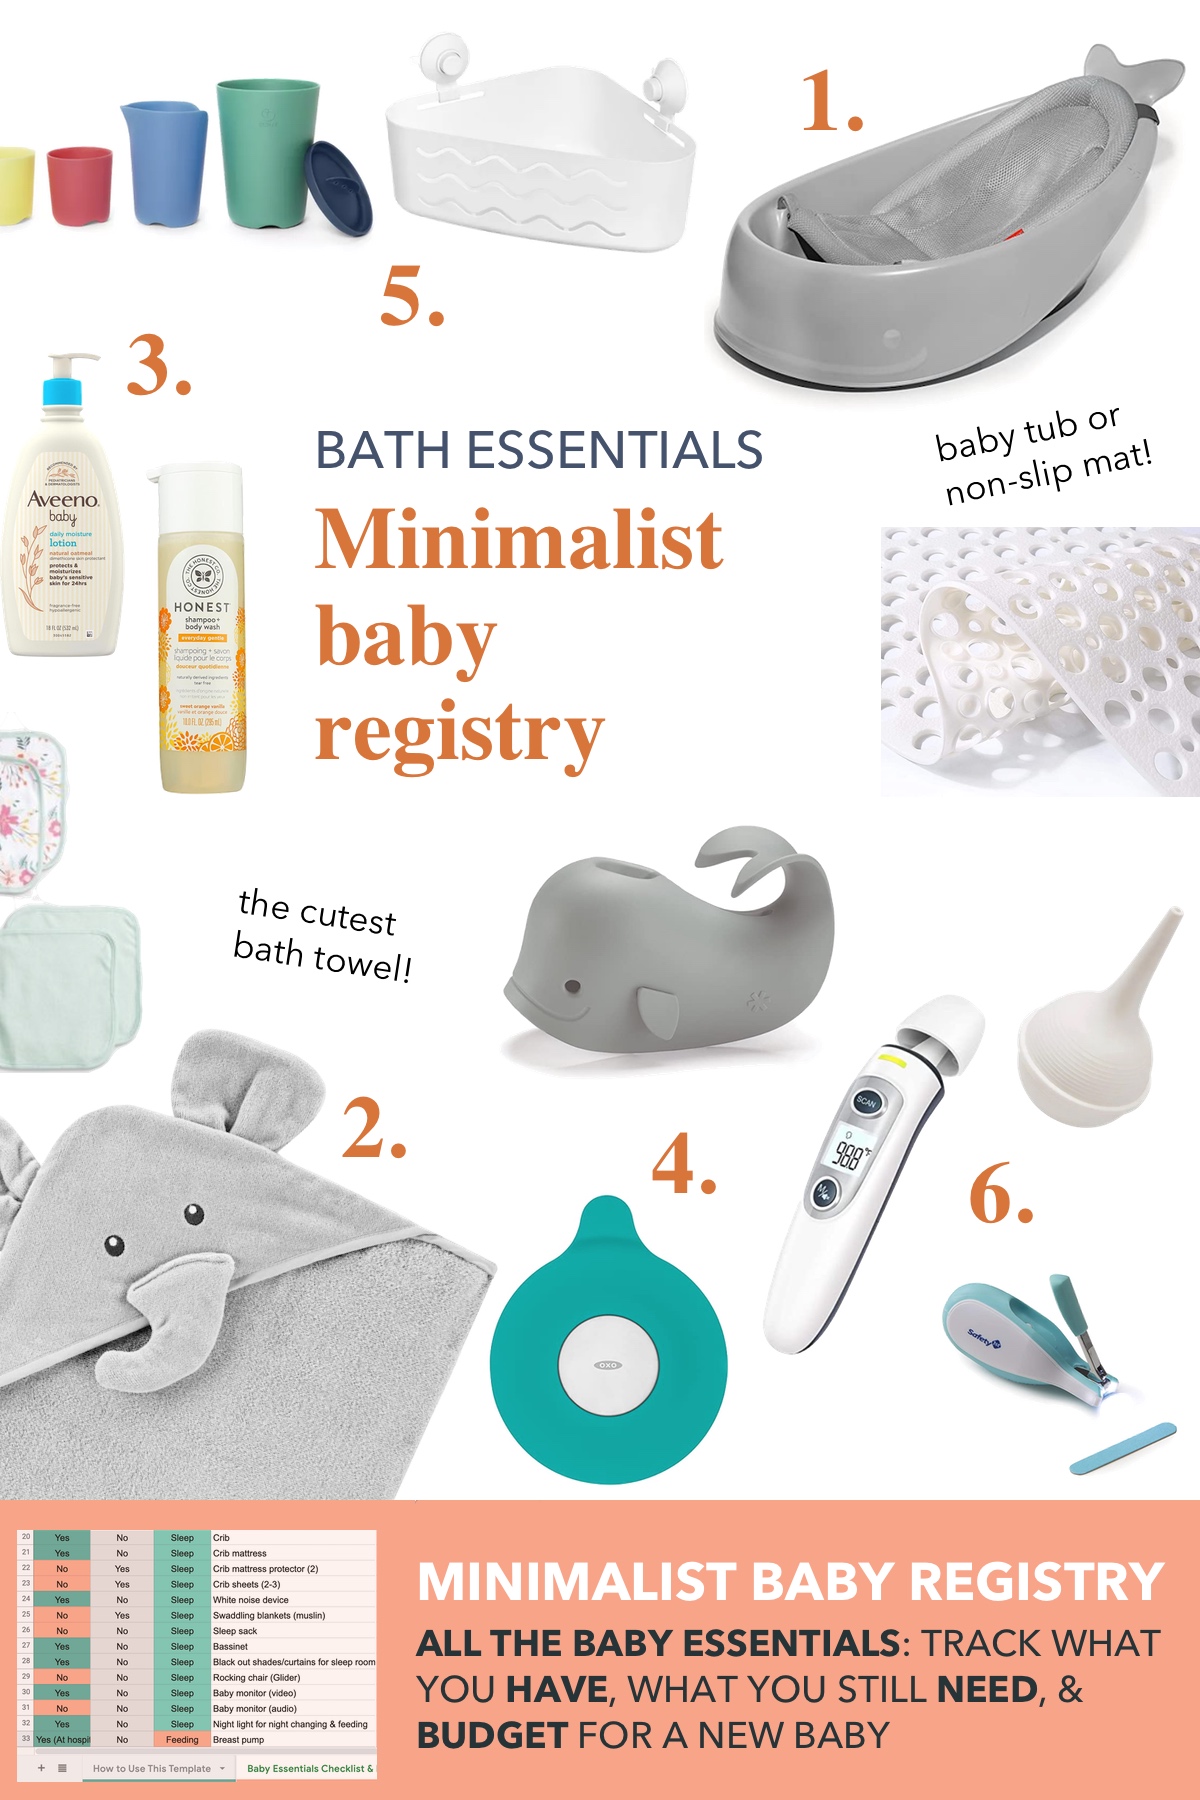 Foster House: Baby Registry Essentials: Bath